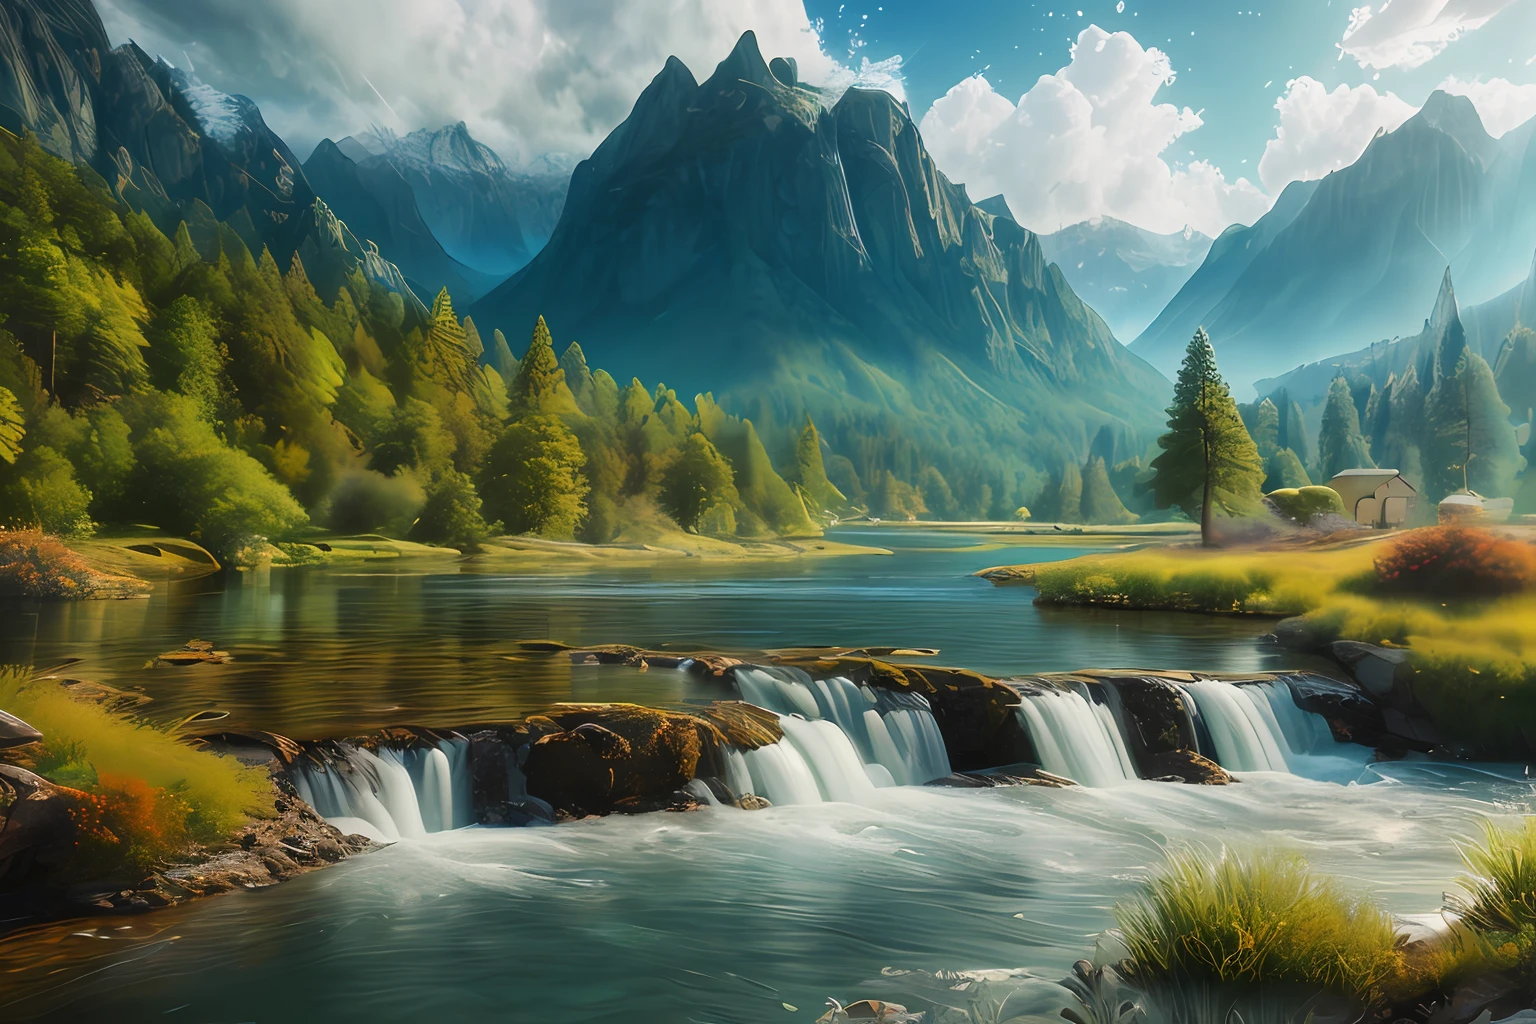 Landschaft,Wasser,(extrem detailliertes CG Unity 8k-Hintergrundbild), das schönste Kunstwerk der Welt,professionelle majestätische Ölmalerei,kompliziert, hohe Detailgenauigkeit, scharfer Fokus, dramatisch, fotorealistische Malerei Kunst